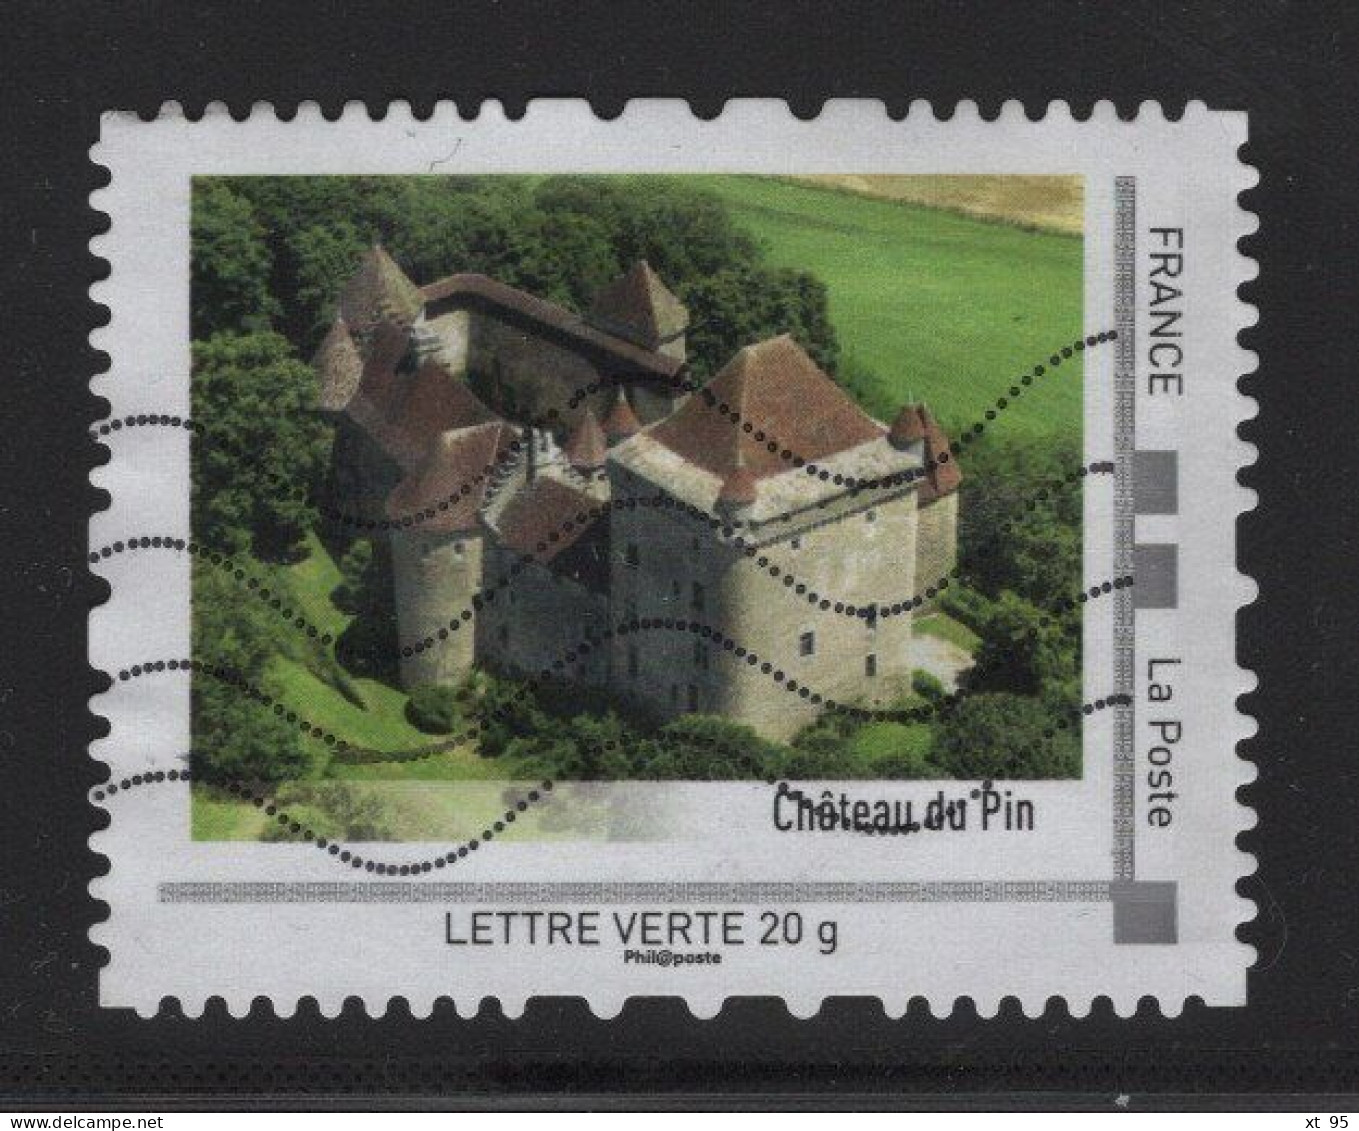 Timbre Personnalise Oblitere - Lettre Verte 20g - Chateau Du Pin - Gebruikt